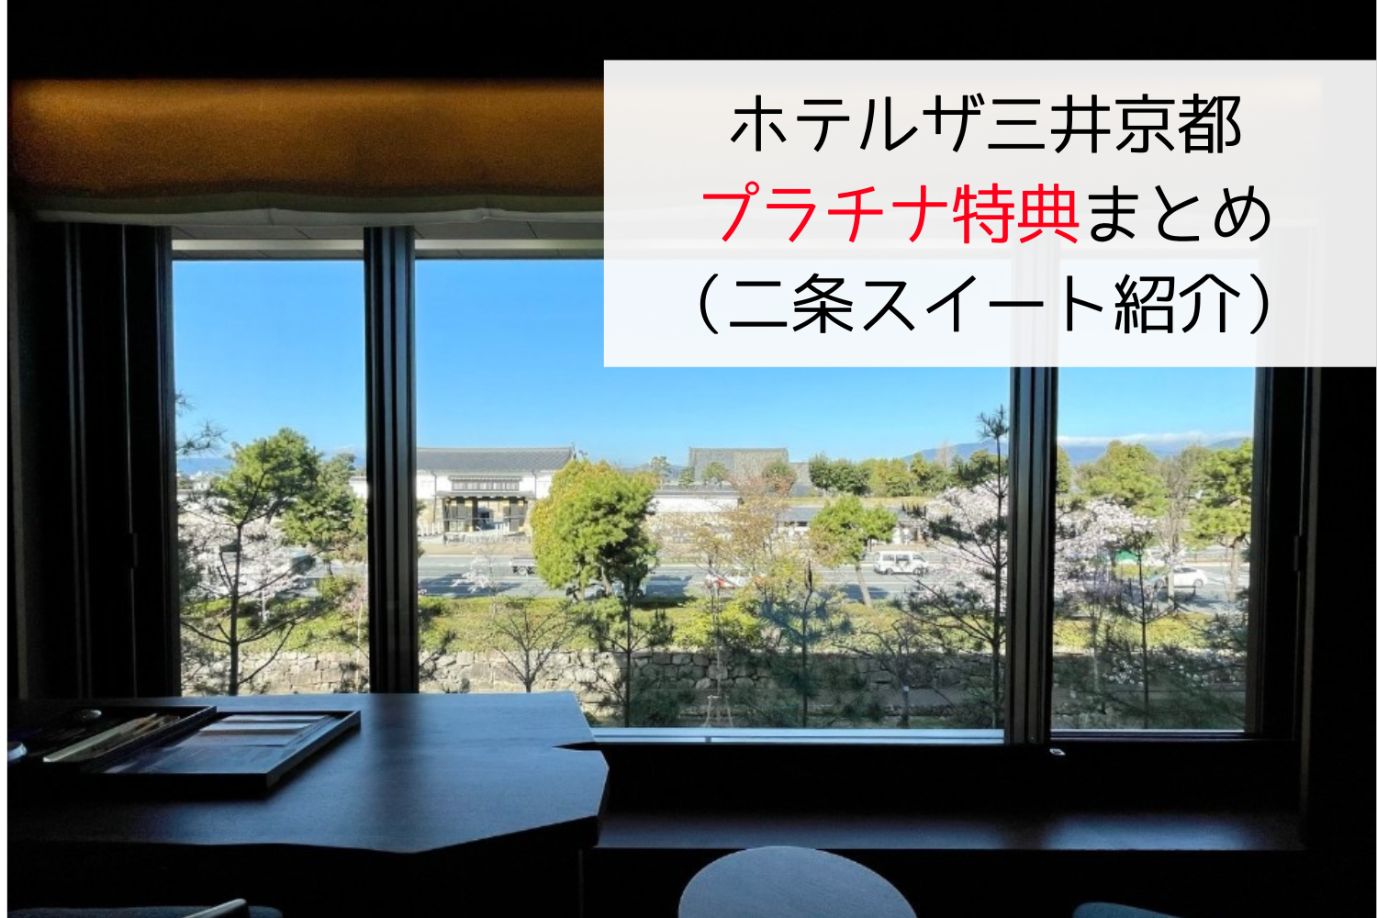 ホテルザ三井京都のプラチナ特典記事アイキャッチ画像